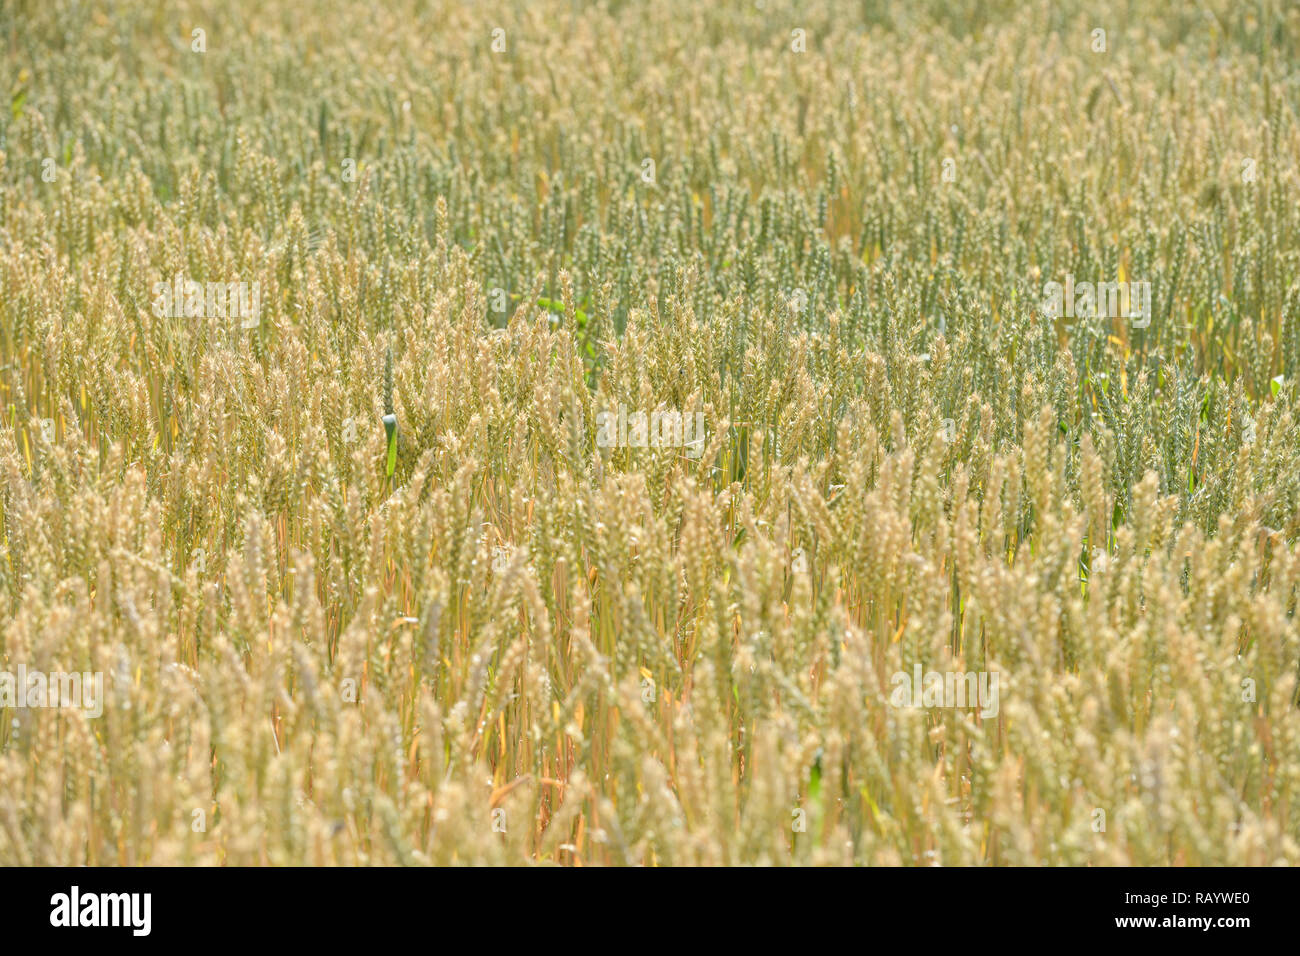 Farben des Sommers, leuchtend gelb grün gefärbte Ohren von Mais auf einem Feld Struktur, detaillierte erschossen. Stockfoto